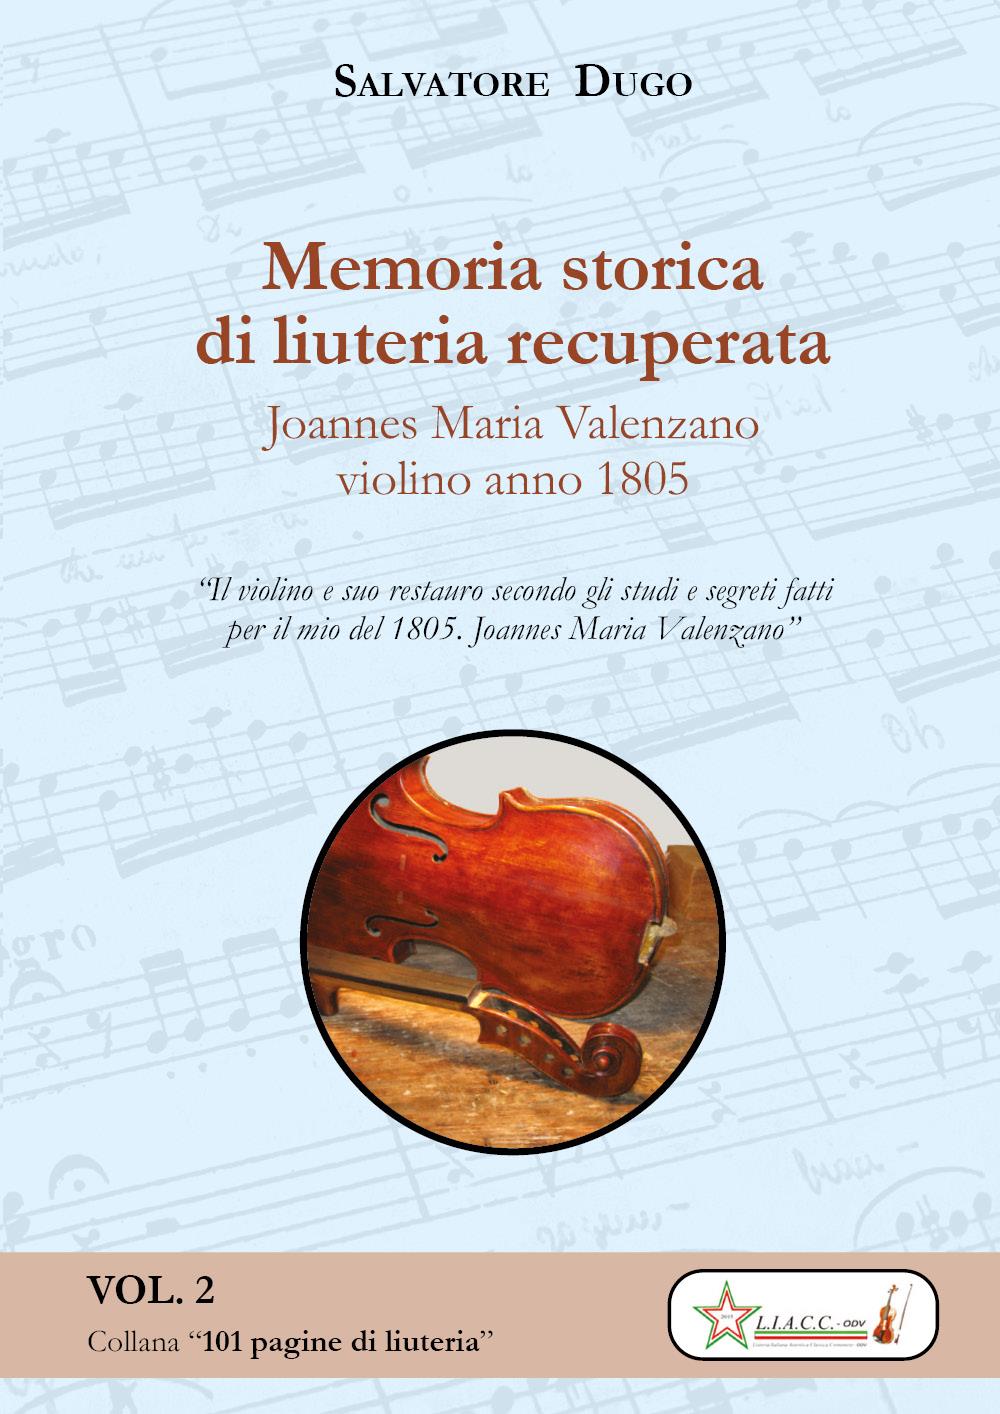 Joannes Maria VALENZANO violino 1805. Memoria storica di liuteria recuperata - COLLANA “101 pagine di liuteria”